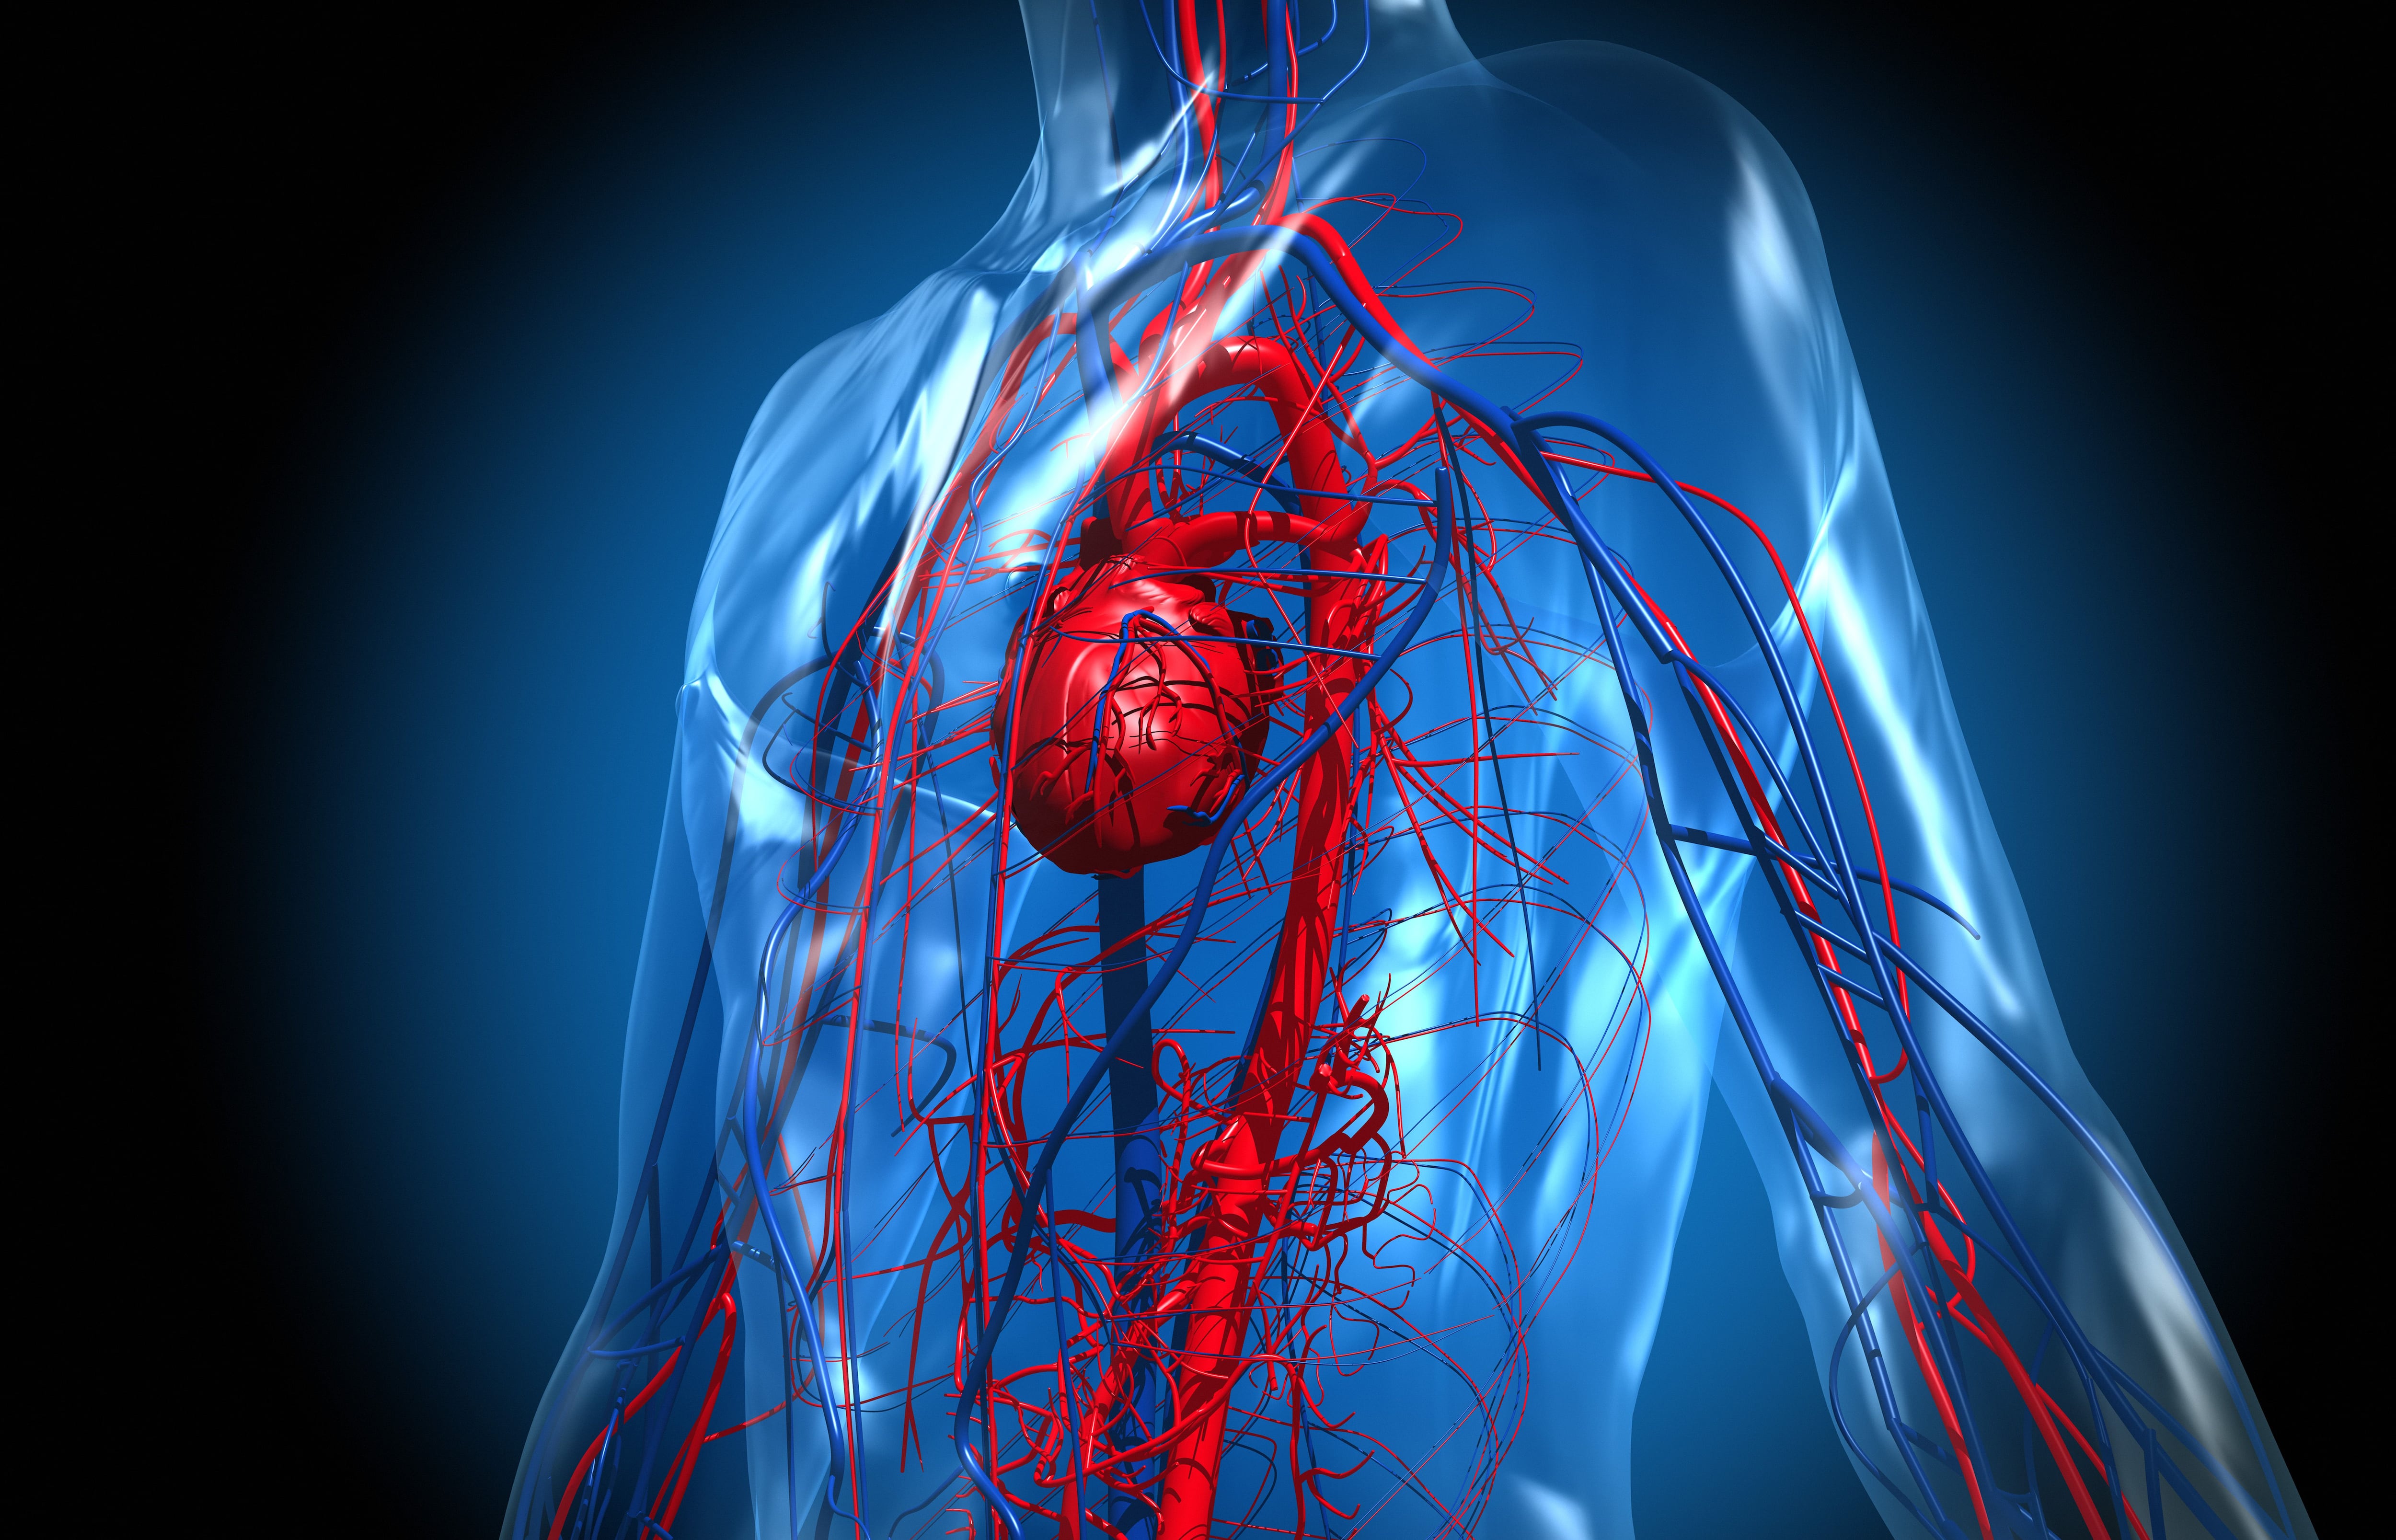  El colesterol alto se asocia con enfermedades cardiovasculares, la principal causa de muerte global  (Getty)